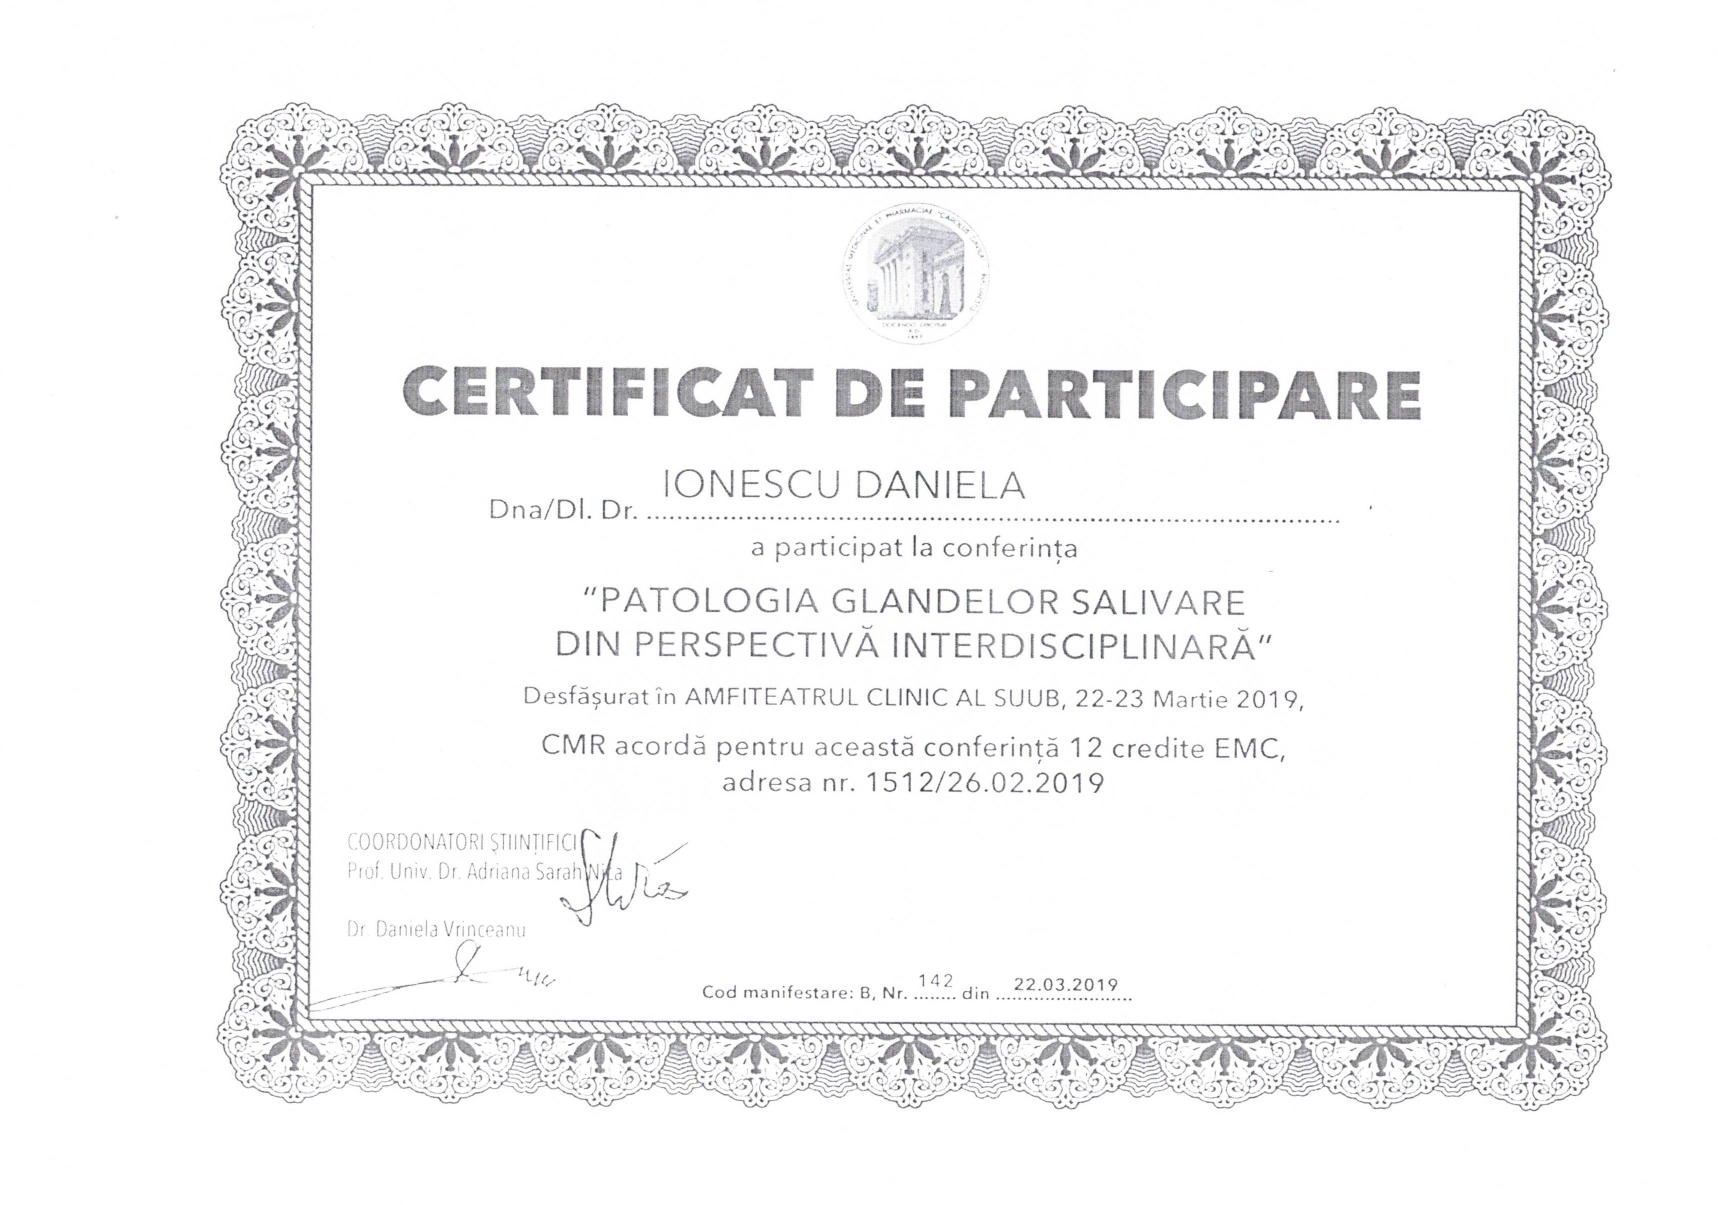 Certificat participare conferinta patologia glandelor salivare - Copy_page-0001